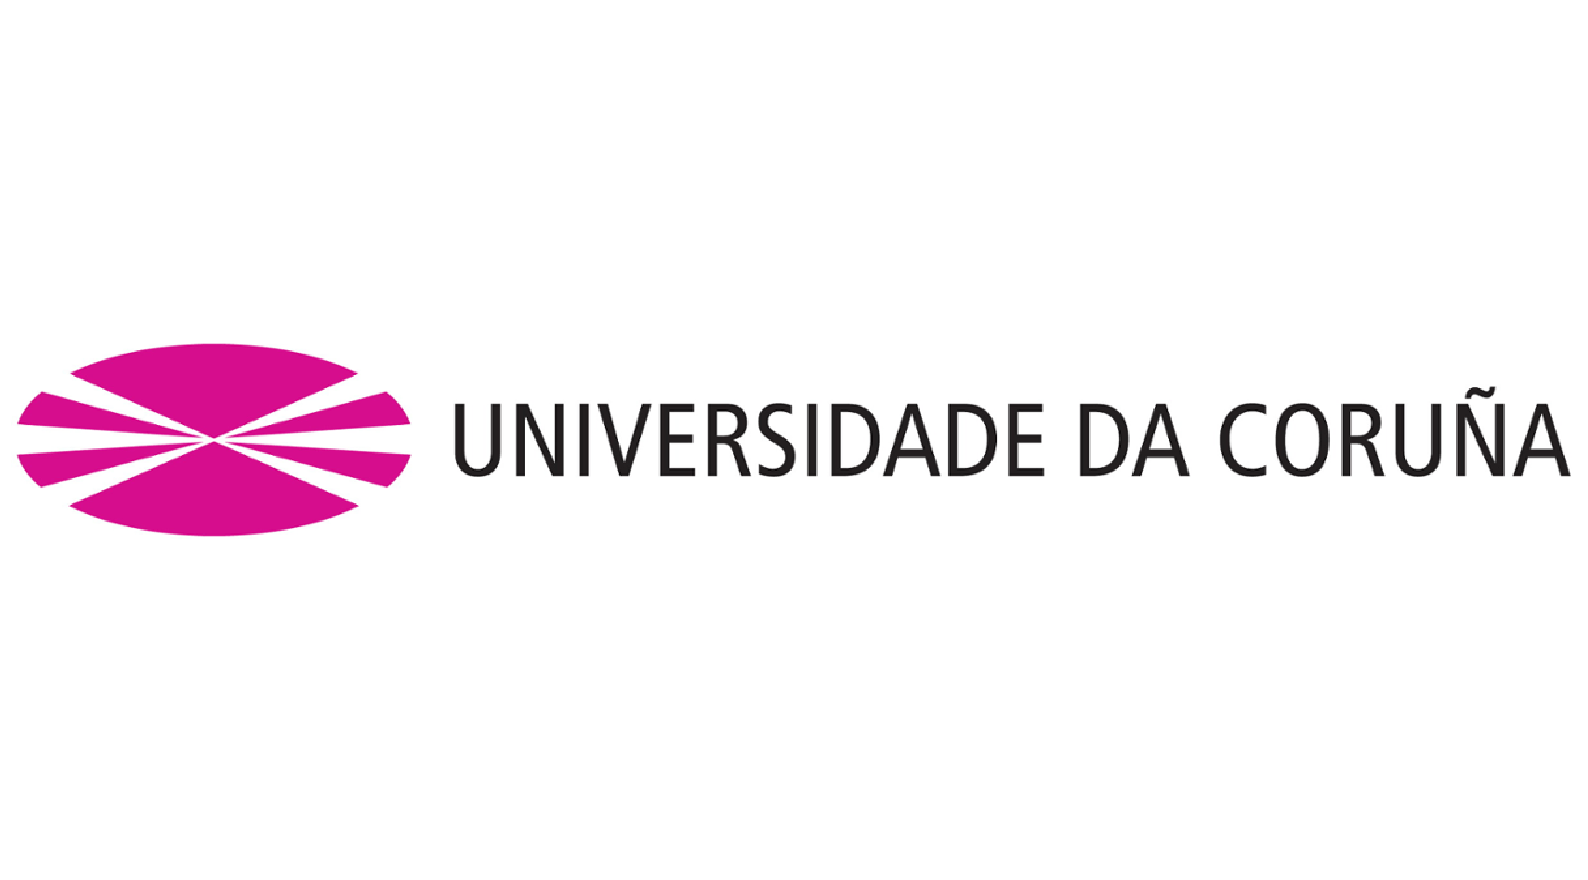 Universidade da Coruña